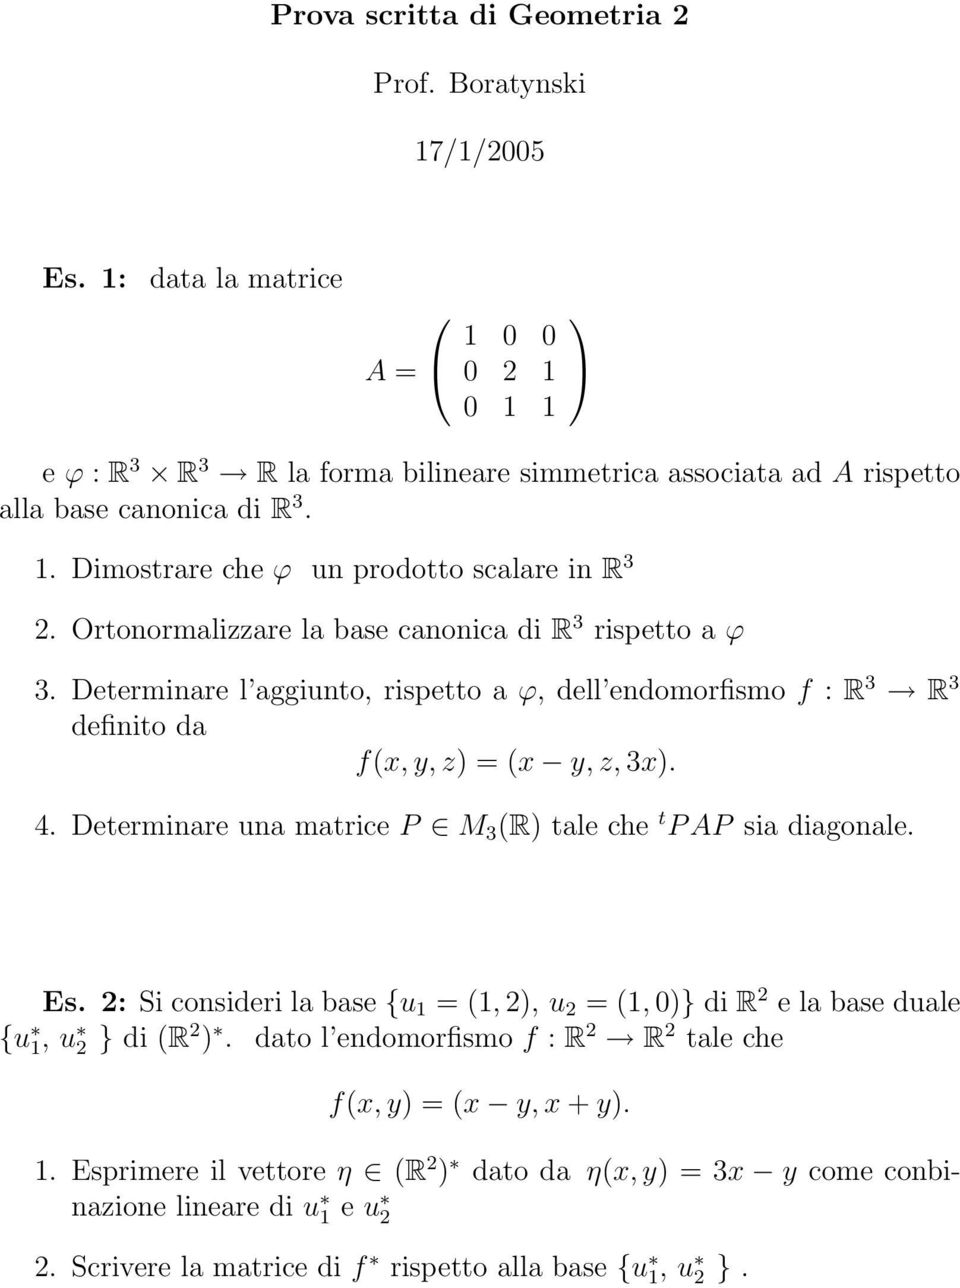 Prova Scritta Di Geometria 2 Prof M Boratynski Pdf Free Download